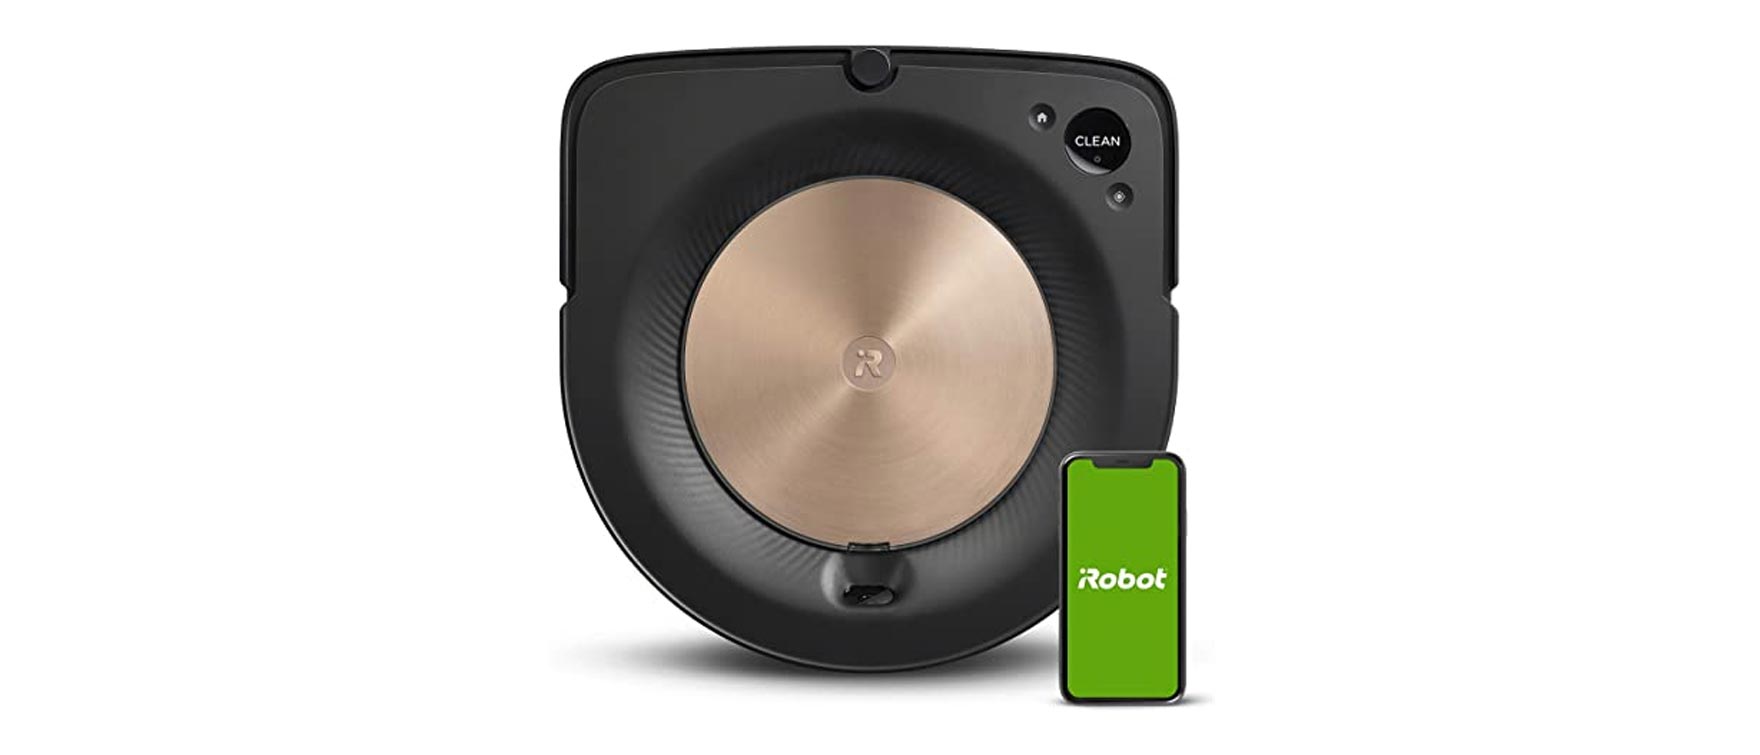 4. iRobot Roomba S9 (9150) Robot Vacuum